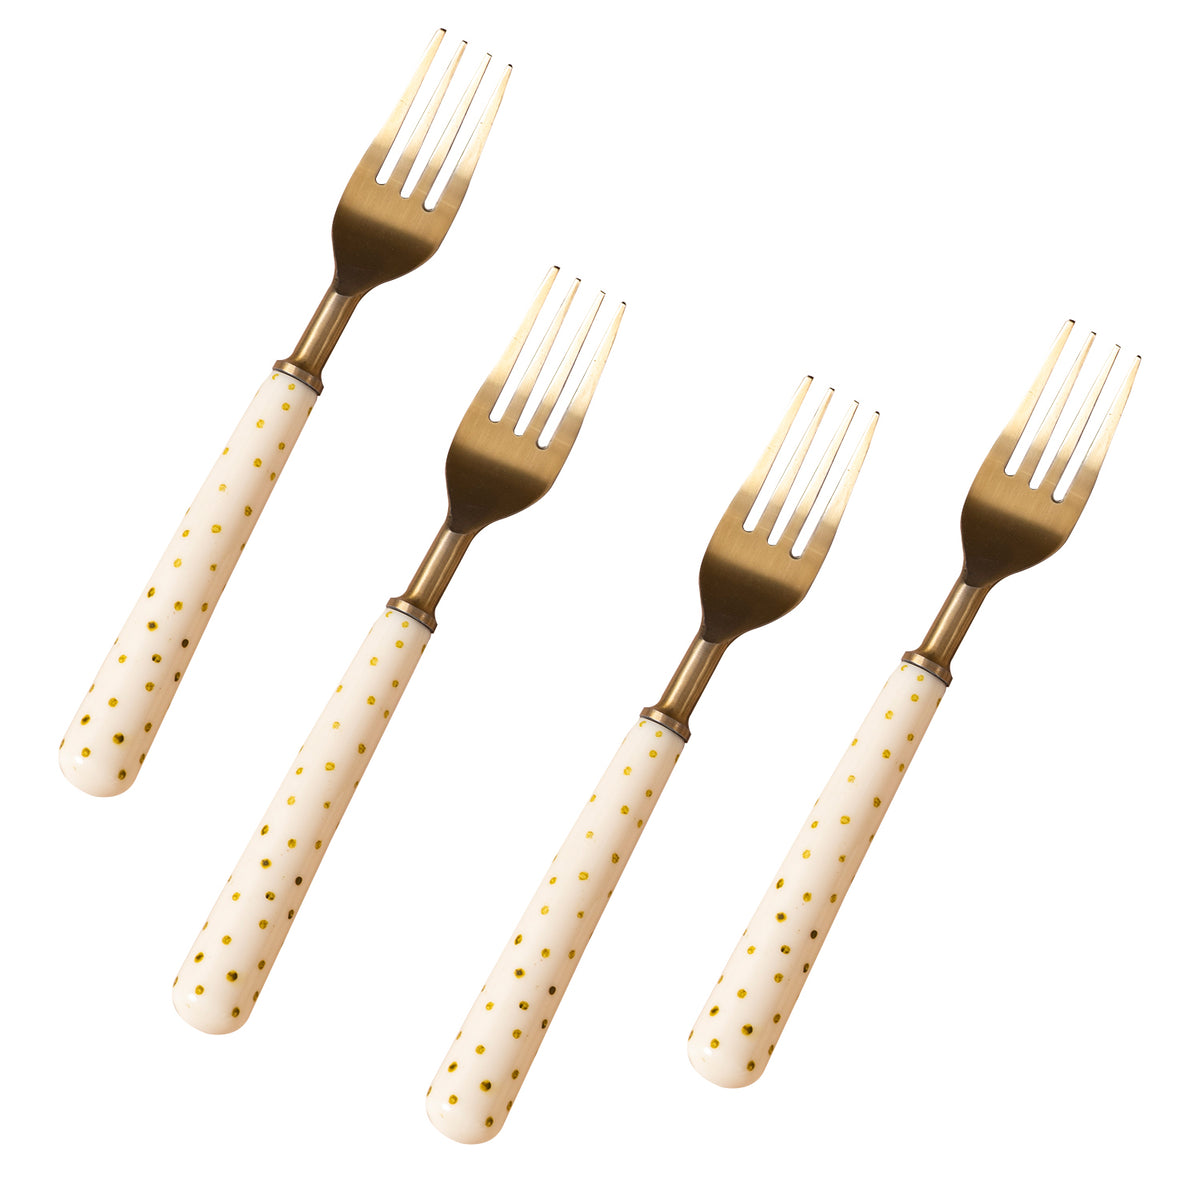 Gold fork set of 4